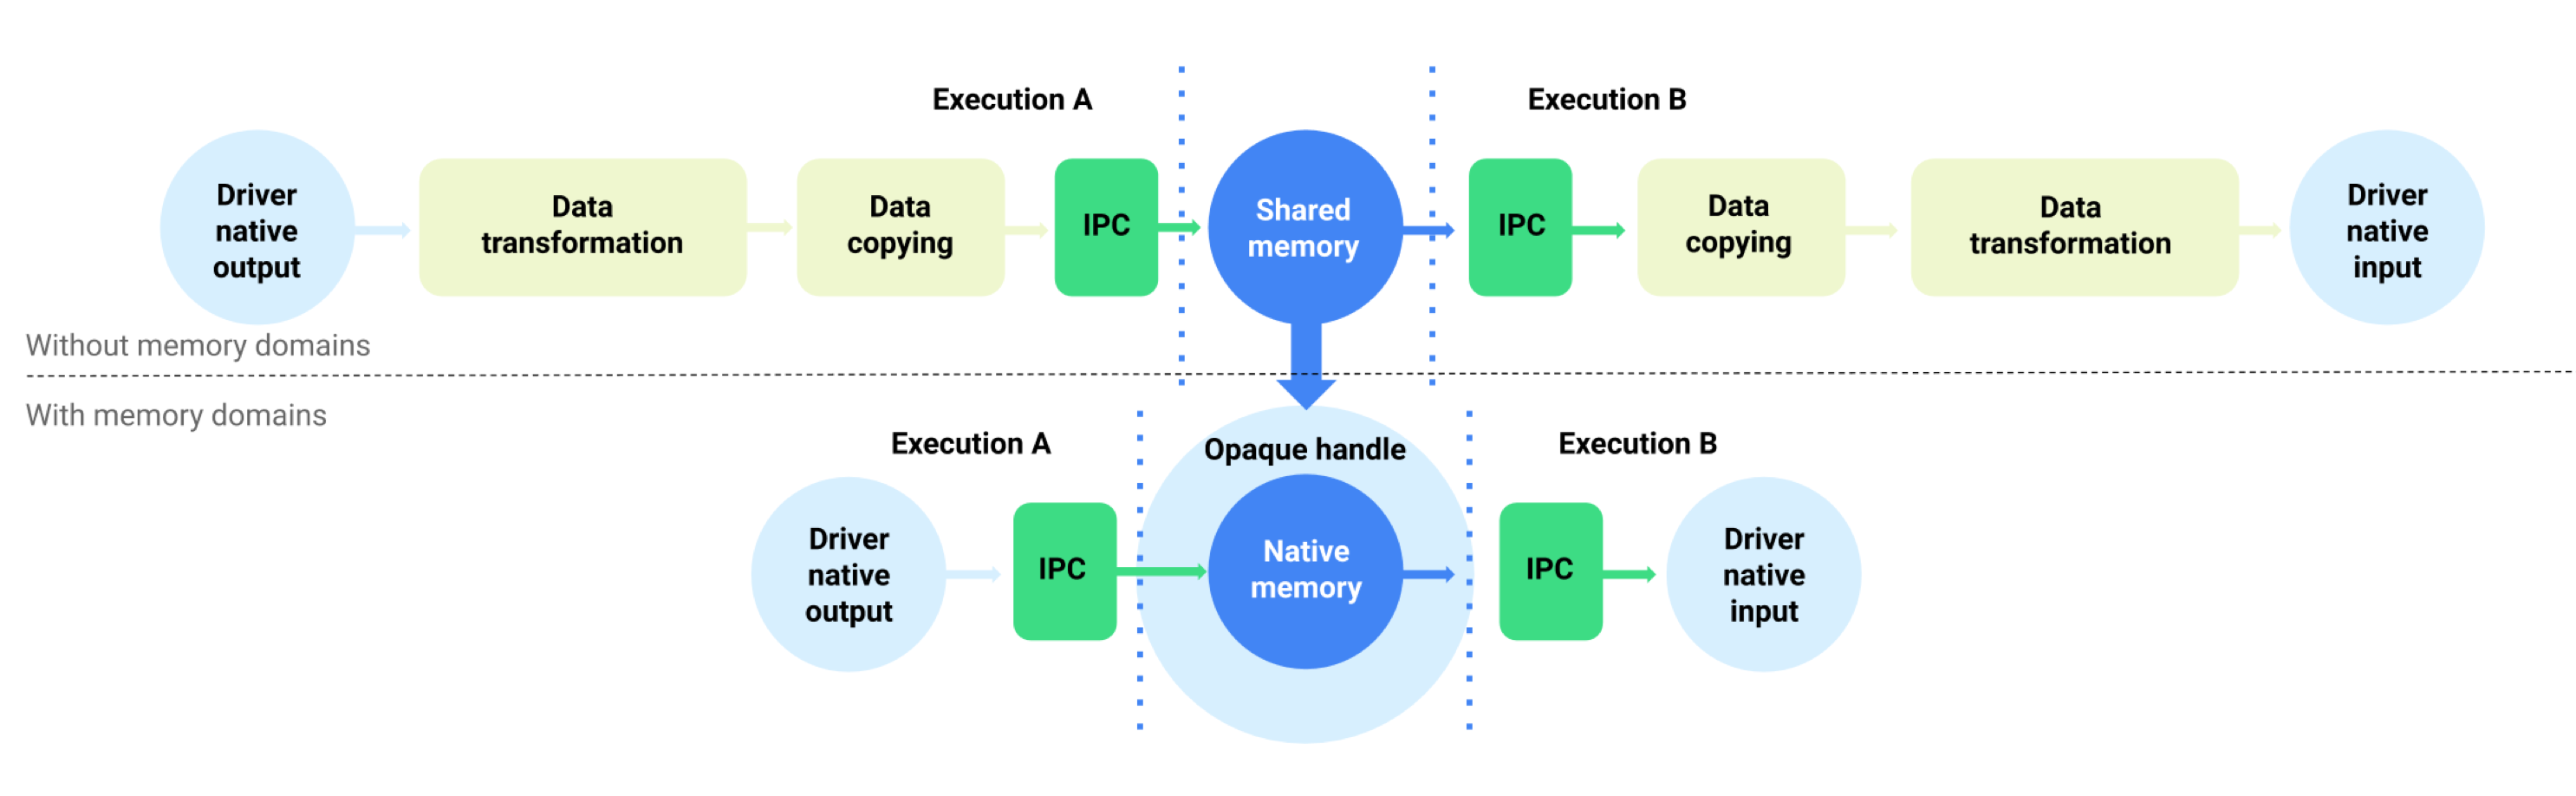 Flujo de datos de búfer con y sin dominios de memoria